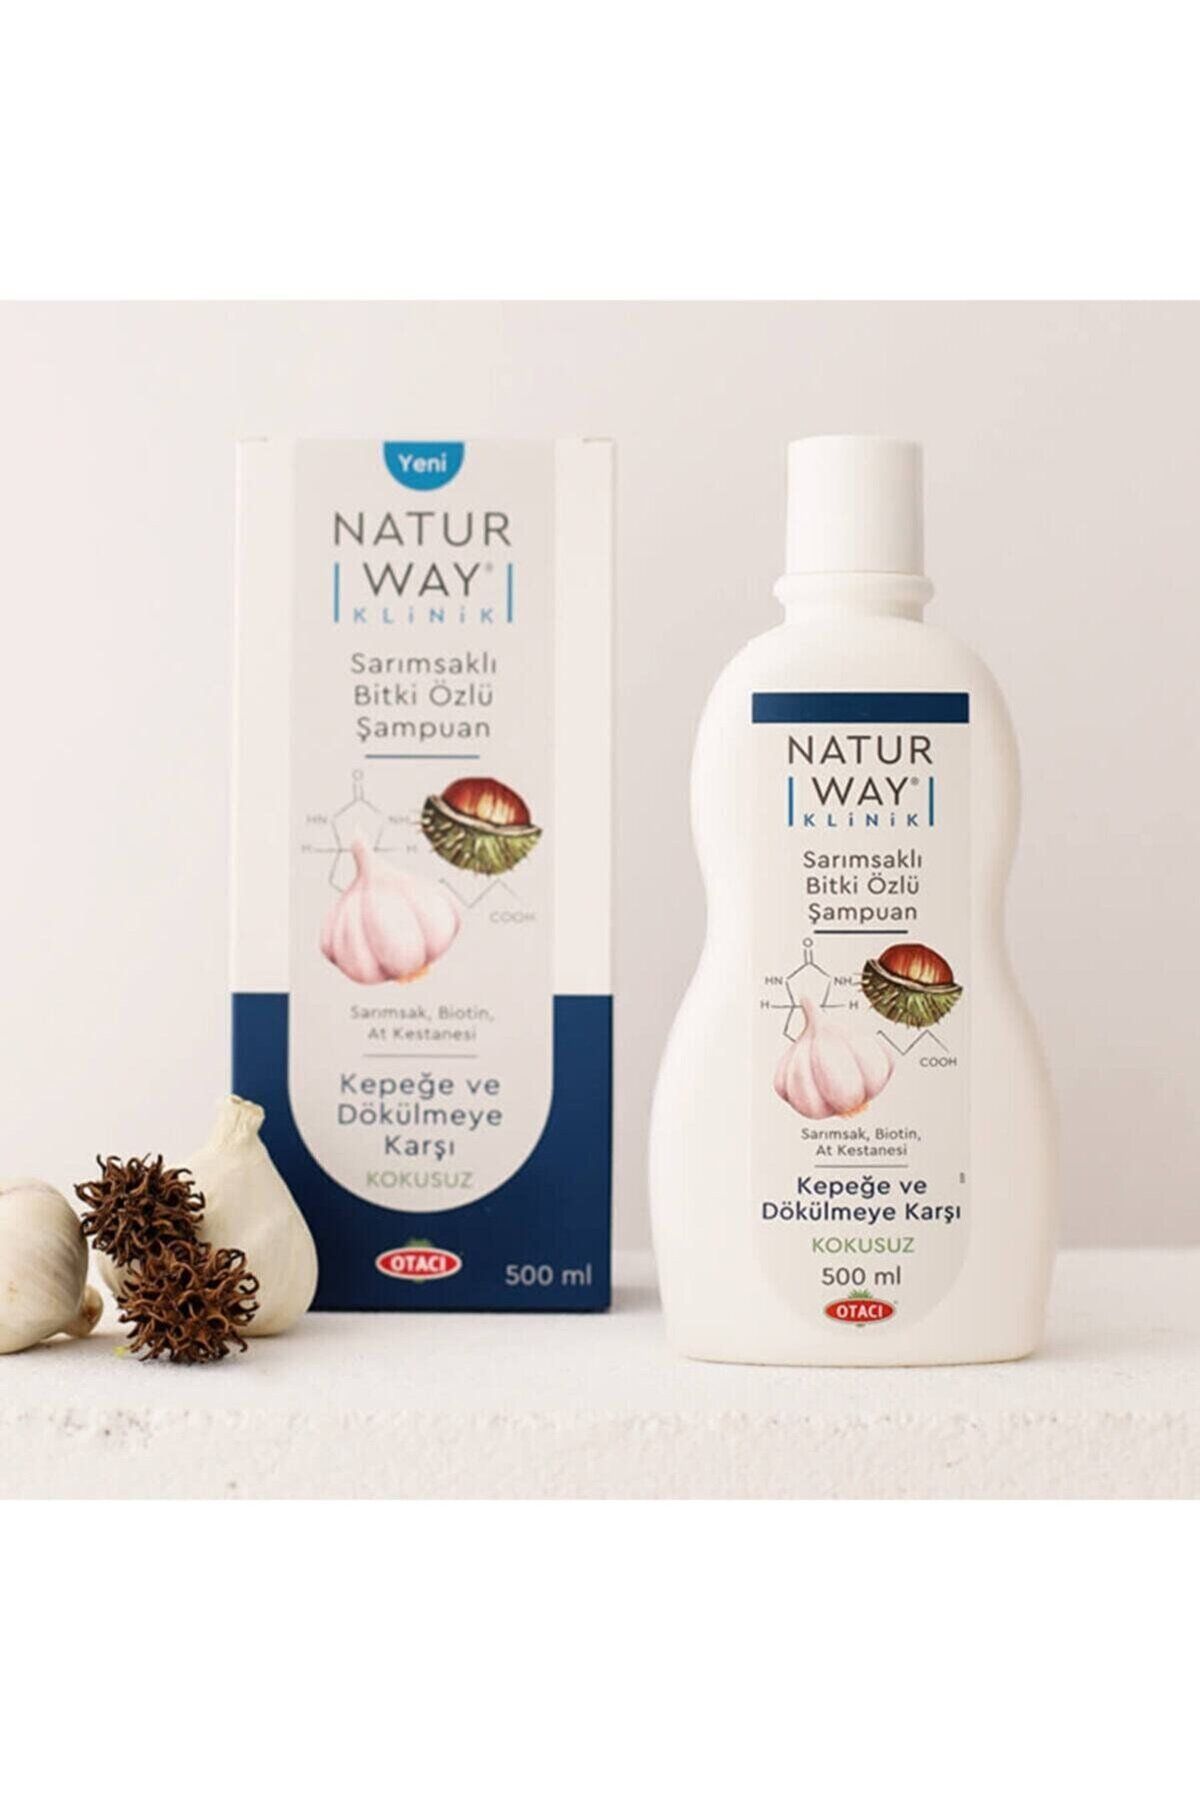 Otacı Naturway Sarımsaklı Kepeğe Ve Dökülmeye Karşı Şampuan 500 ml - 1 Adet